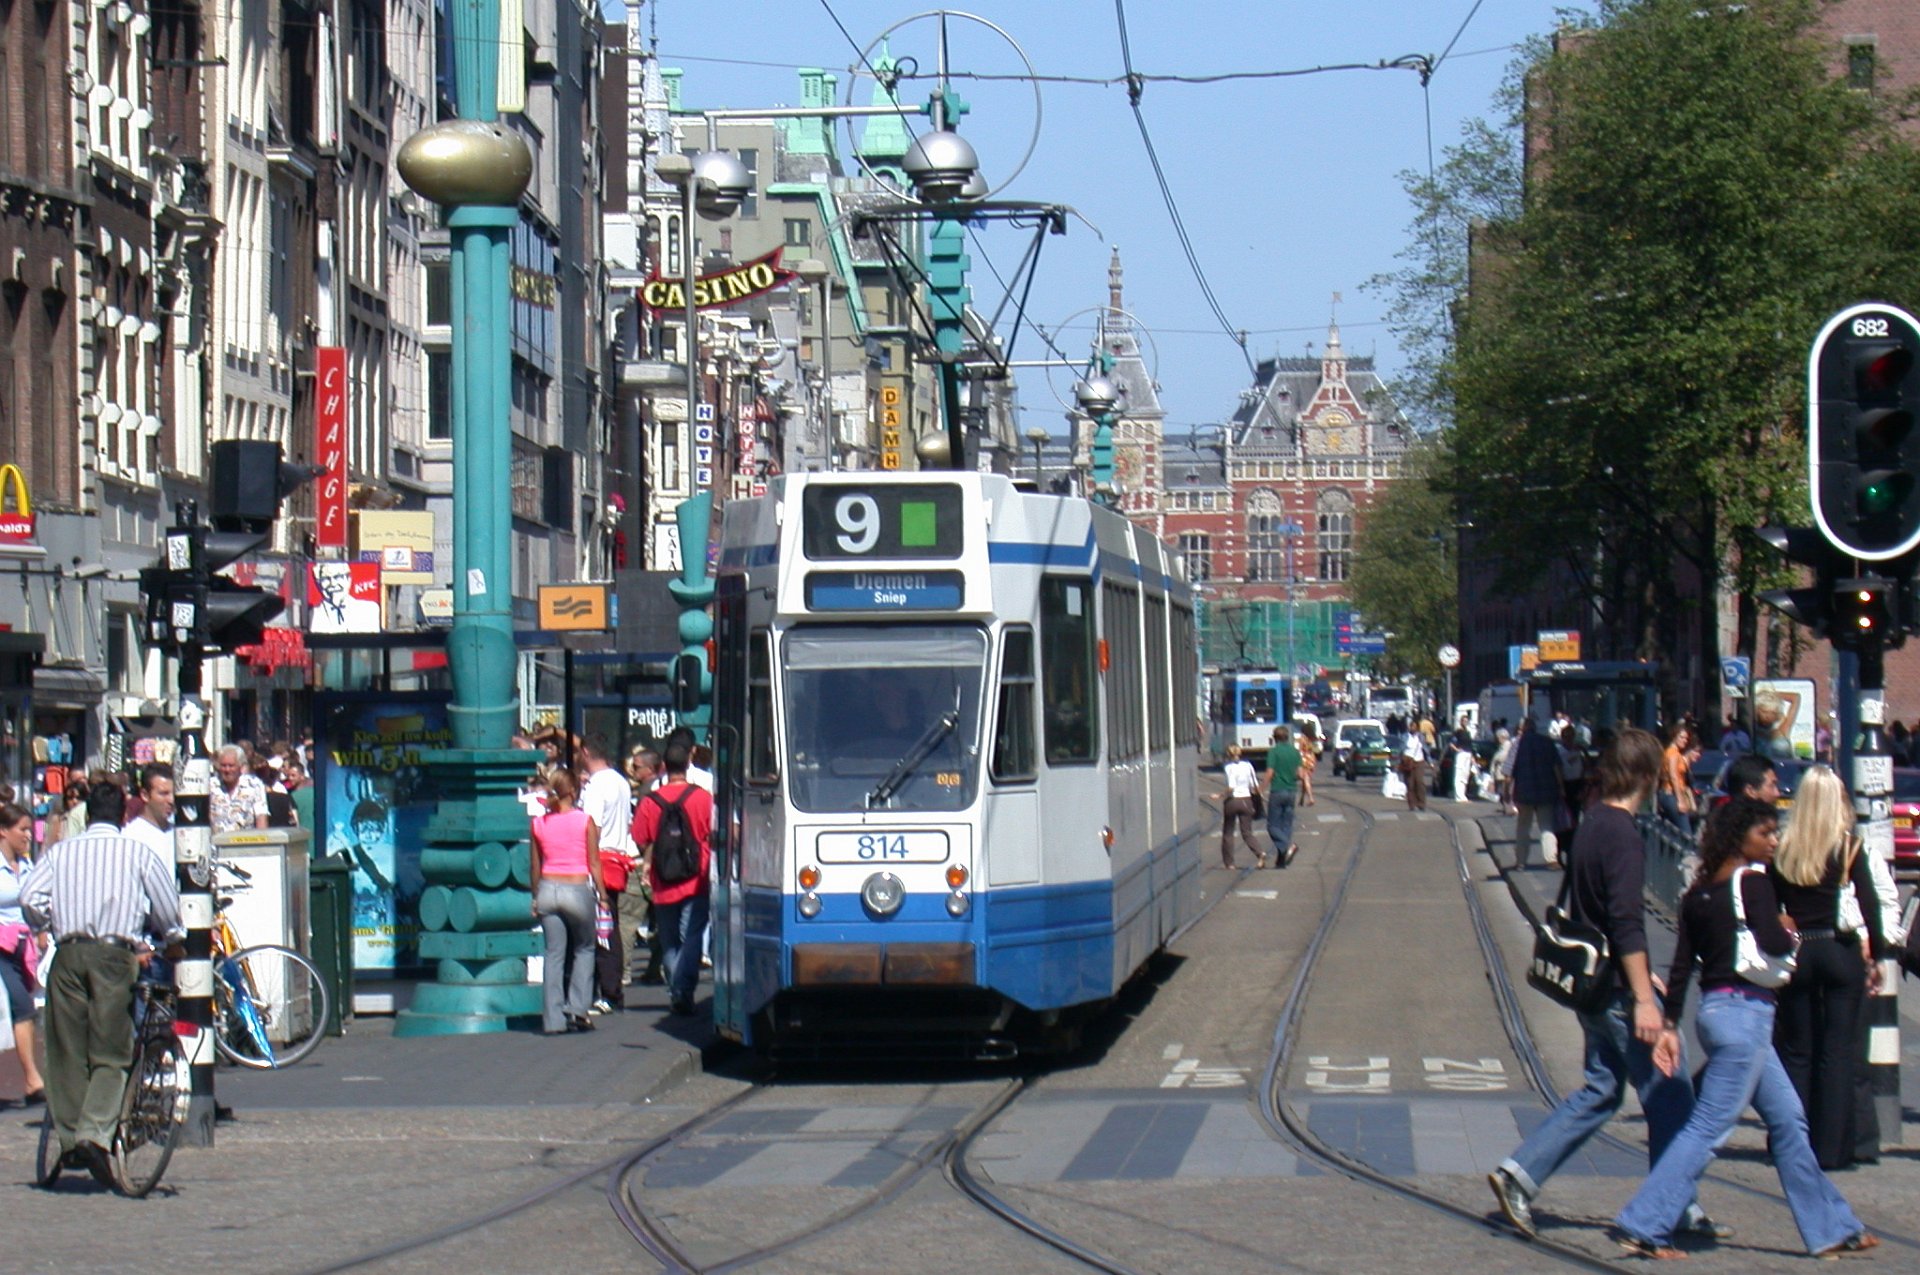 10G 814 814 war die erste Straßenbahn der Serie 9G/10G die - wegen eines Brandes im Aug. 2006 - außer DIenst gestelt wurde. 814 was the first tram of series 9G/10G withdrawn from service - due to a fire in August 2006.